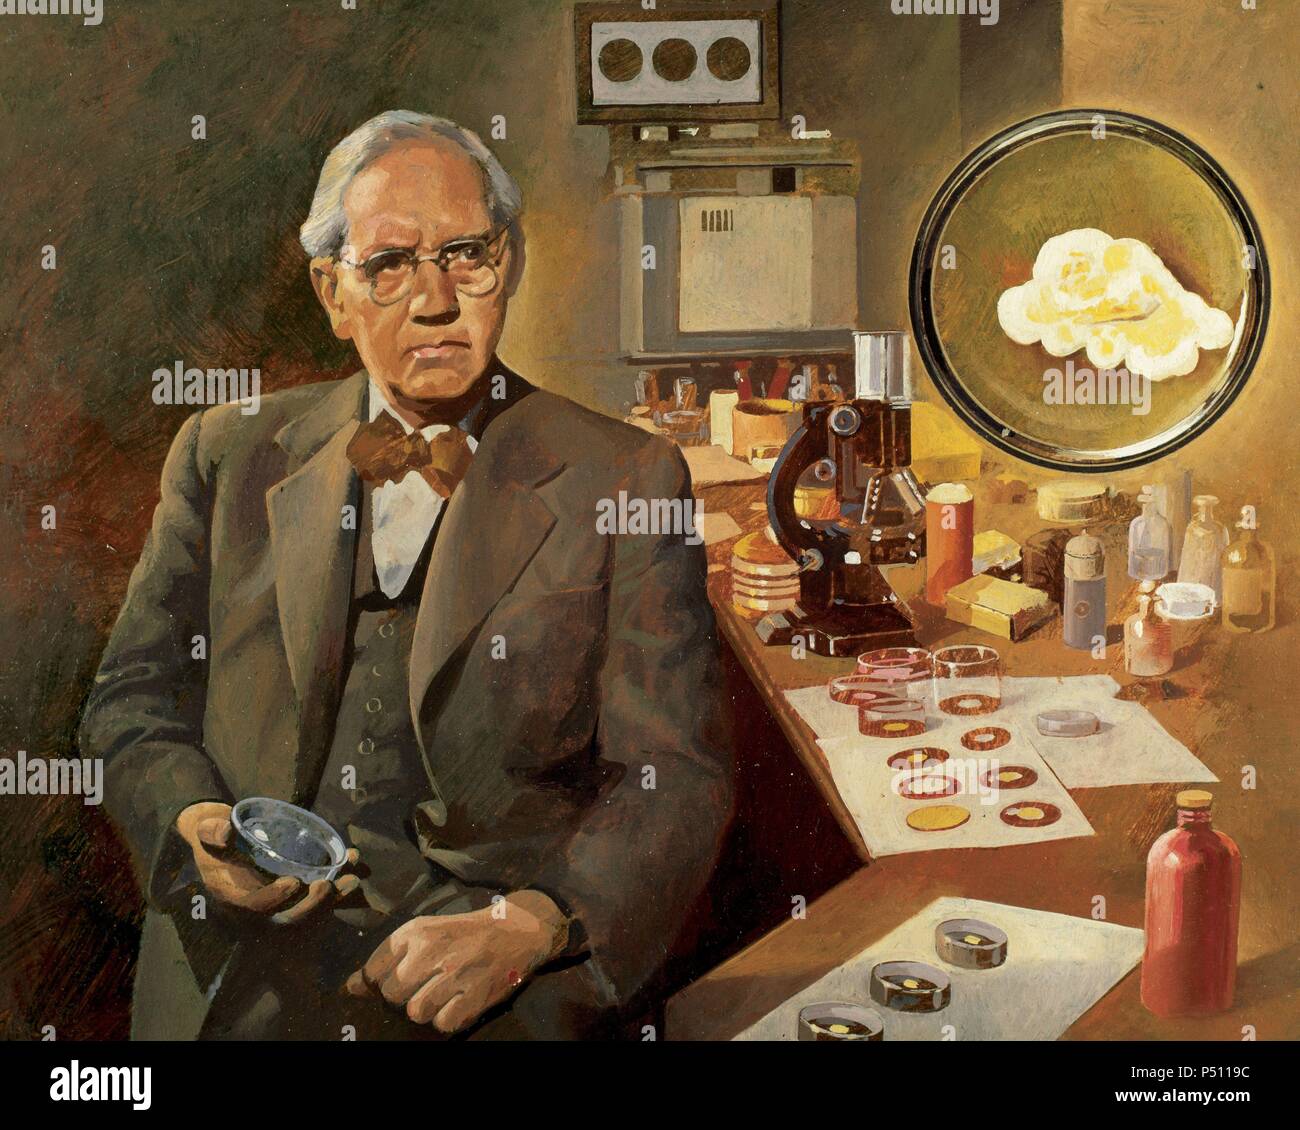 Alexander Fleming (1881-1955). Britische Mikrobiologin, Entdecker des Penicillins (1928). Nobelpreis für Physiologie und Medizin 1945. Stockfoto